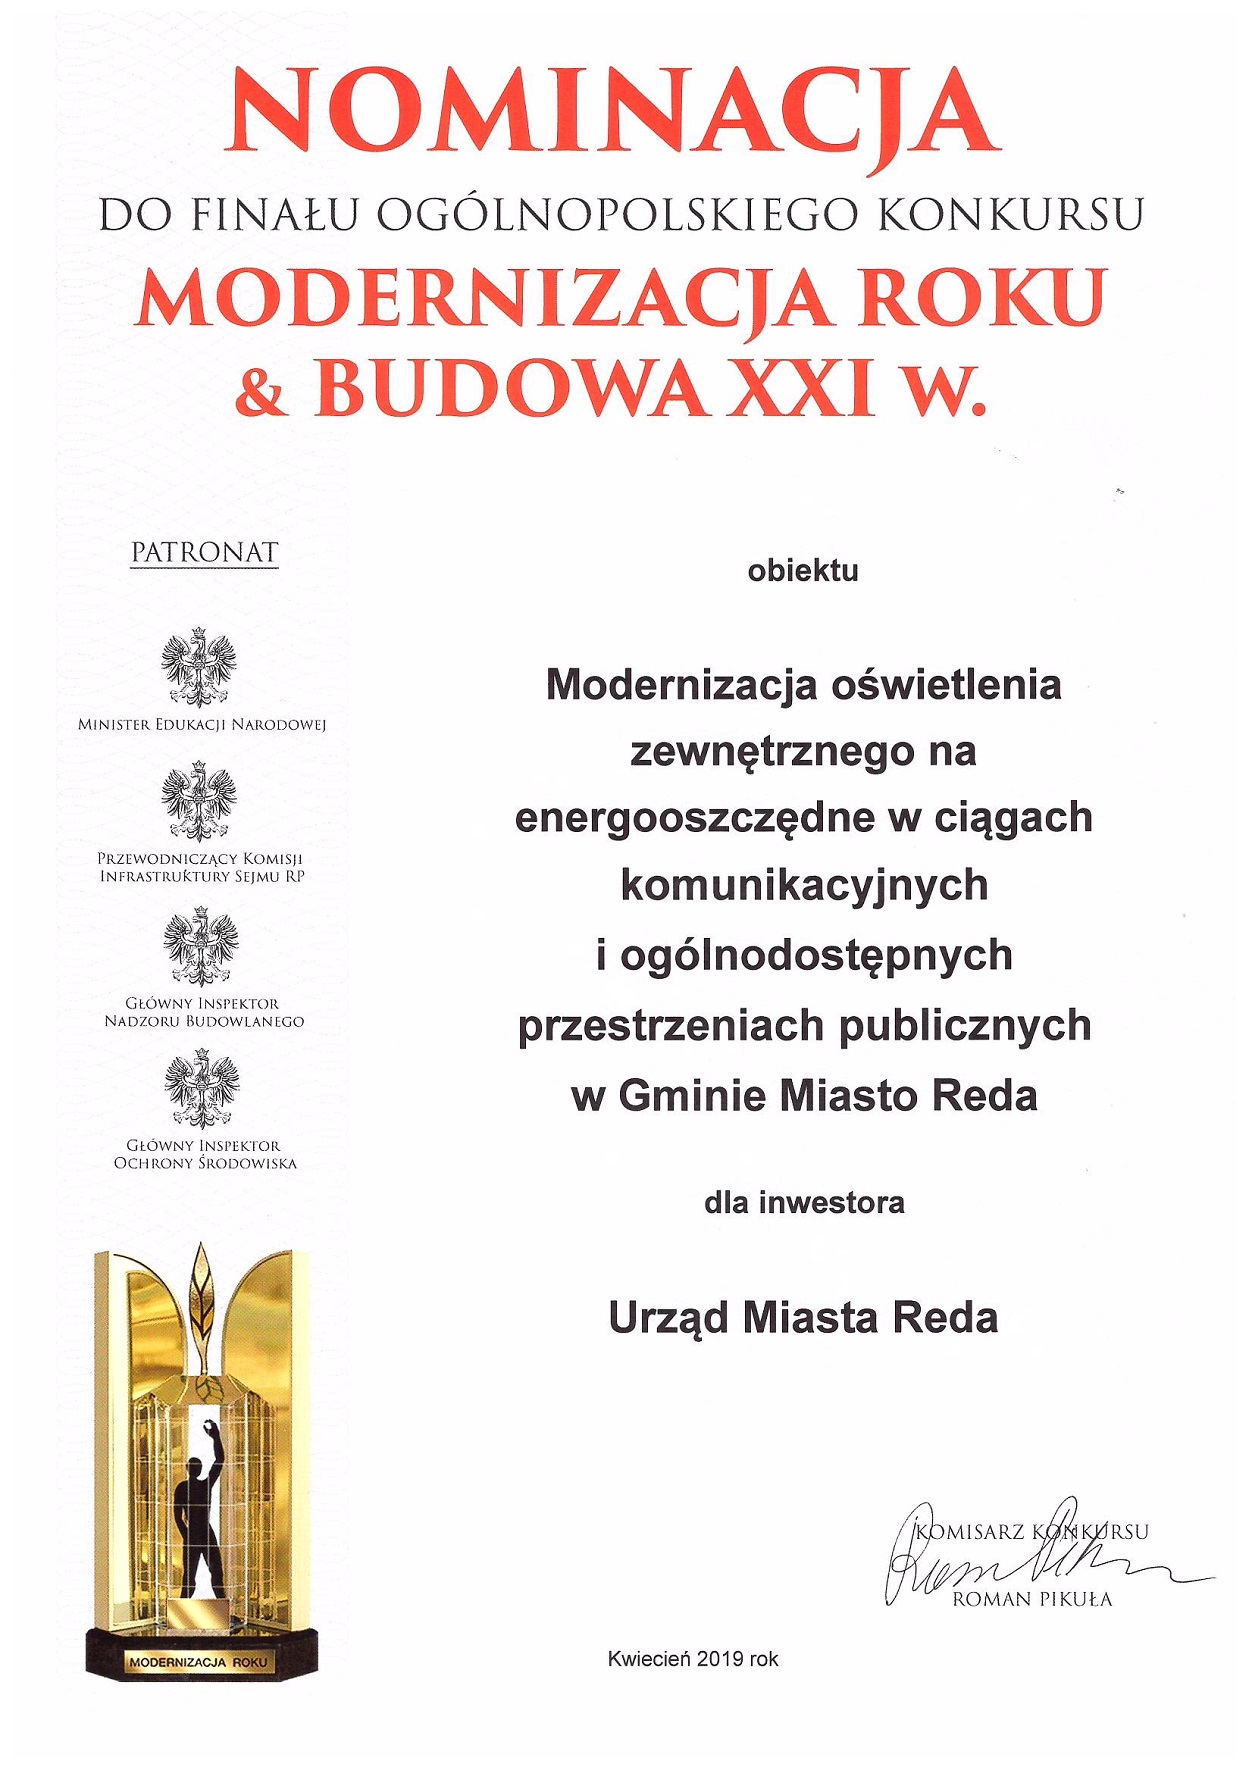 Nominacja do Finału Ogólnopolskiego Konkursu „Modernizacja Roku & Budowa XXI w. 2018”